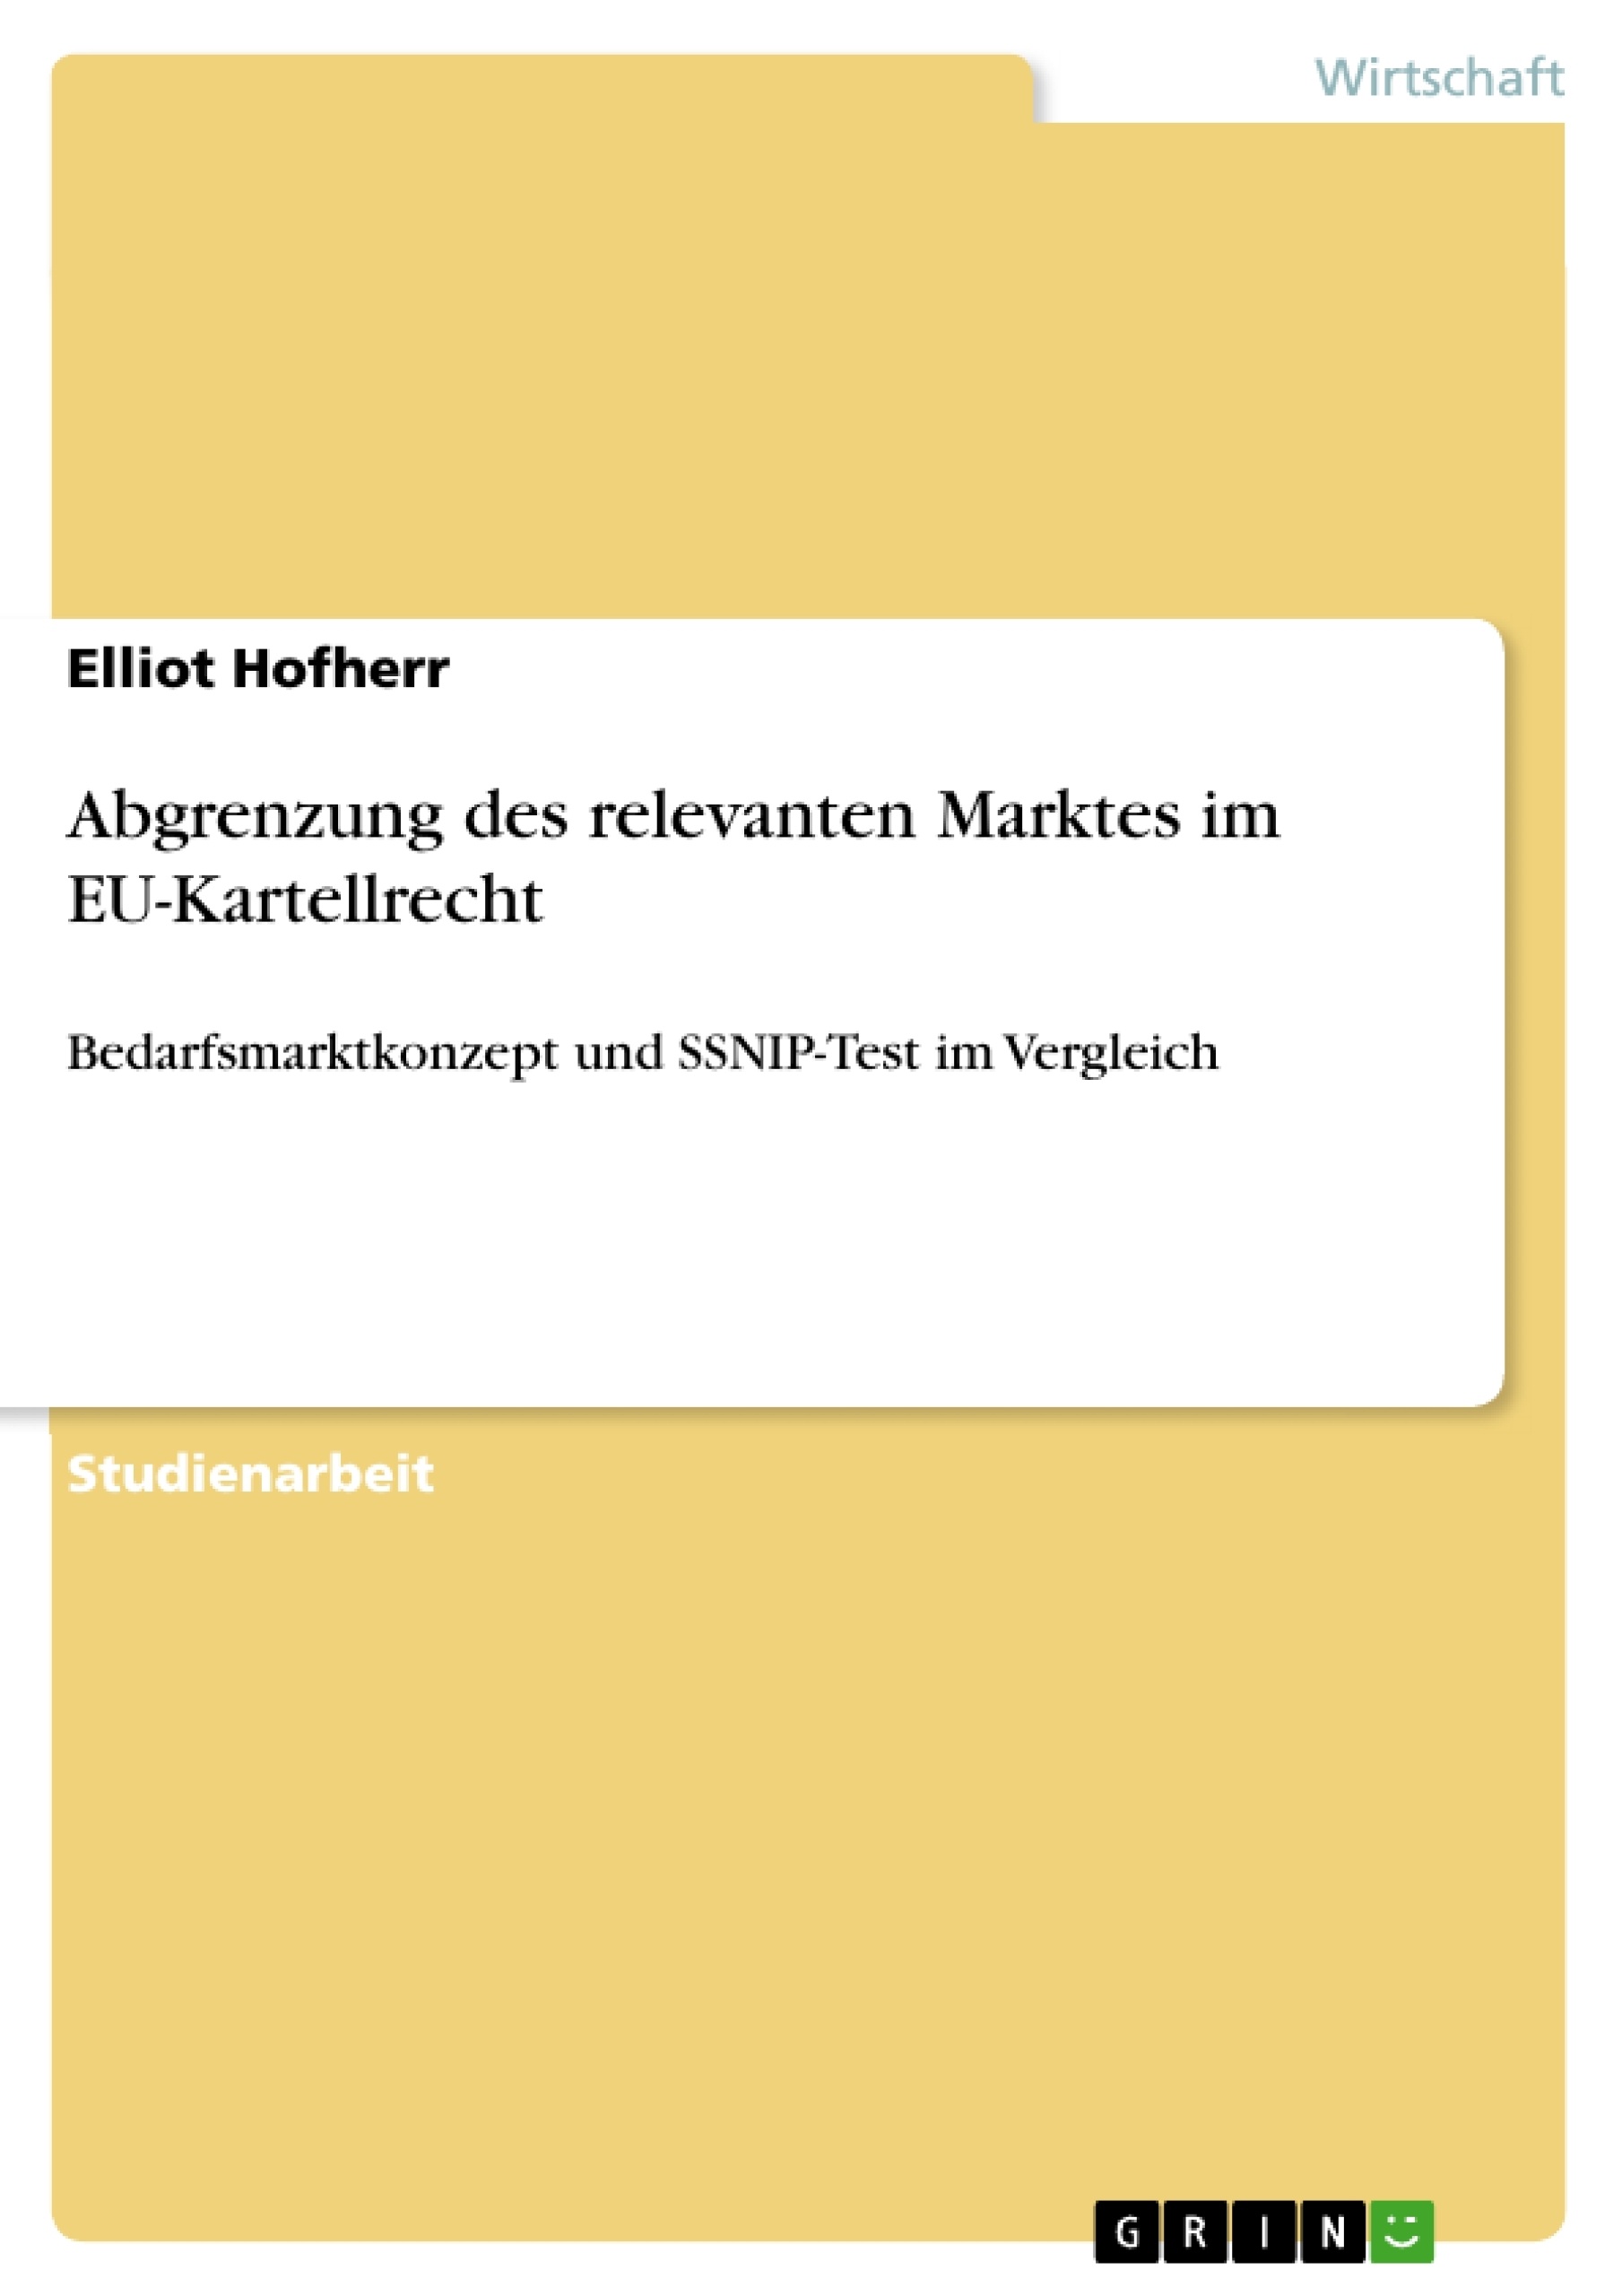 Titre: Abgrenzung des relevanten Marktes im EU-Kartellrecht